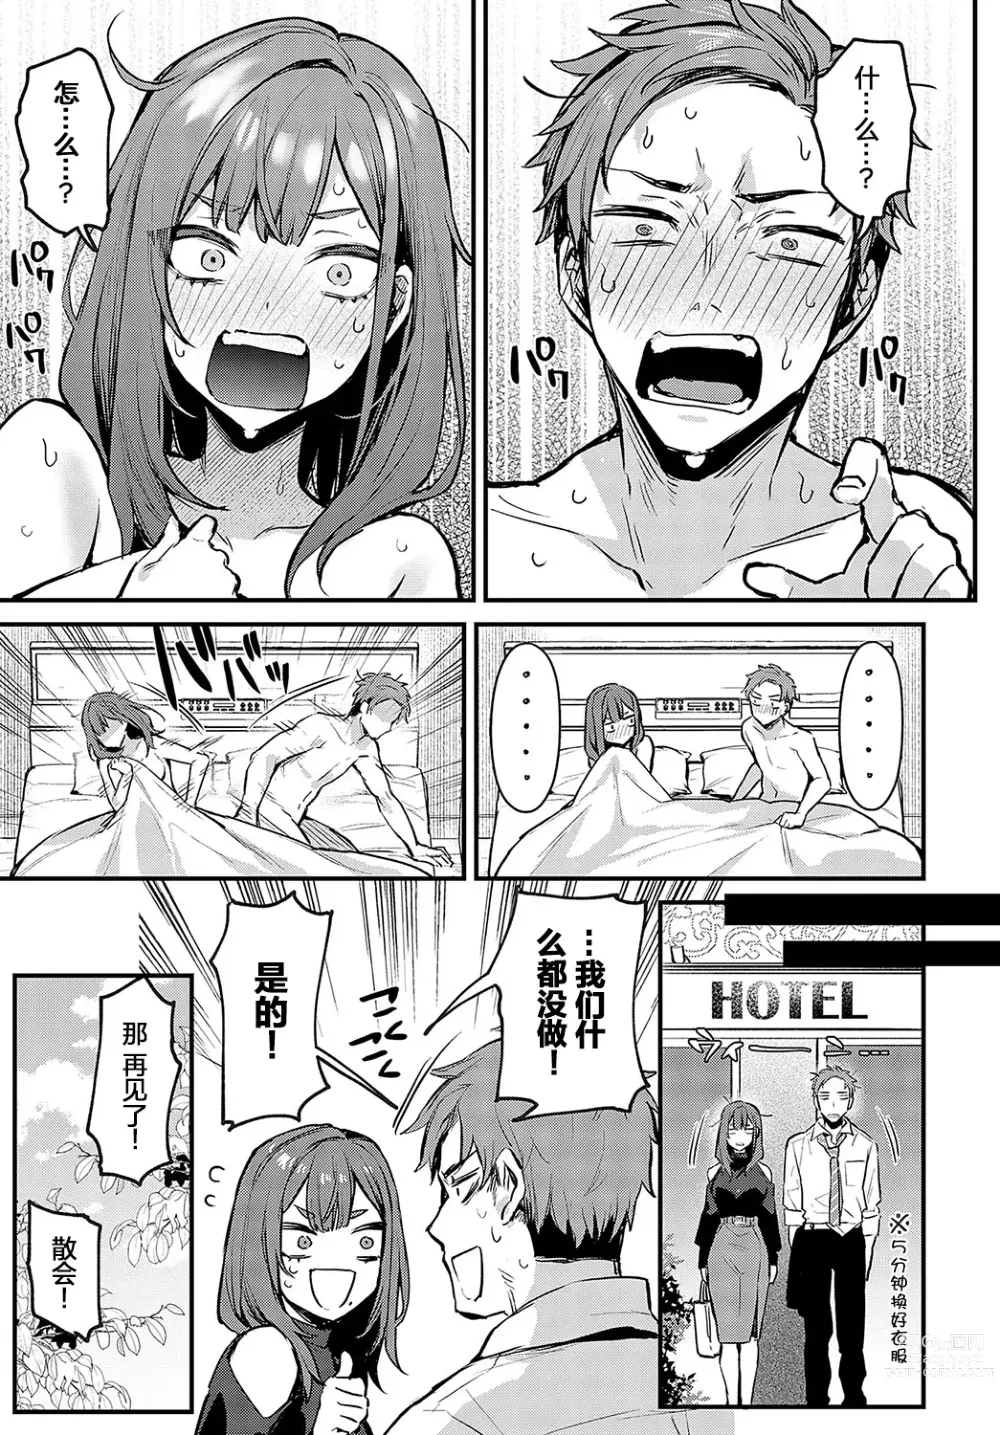 Page 7 of manga Mou Ichido, Shite Mitai. - I wana try it again.